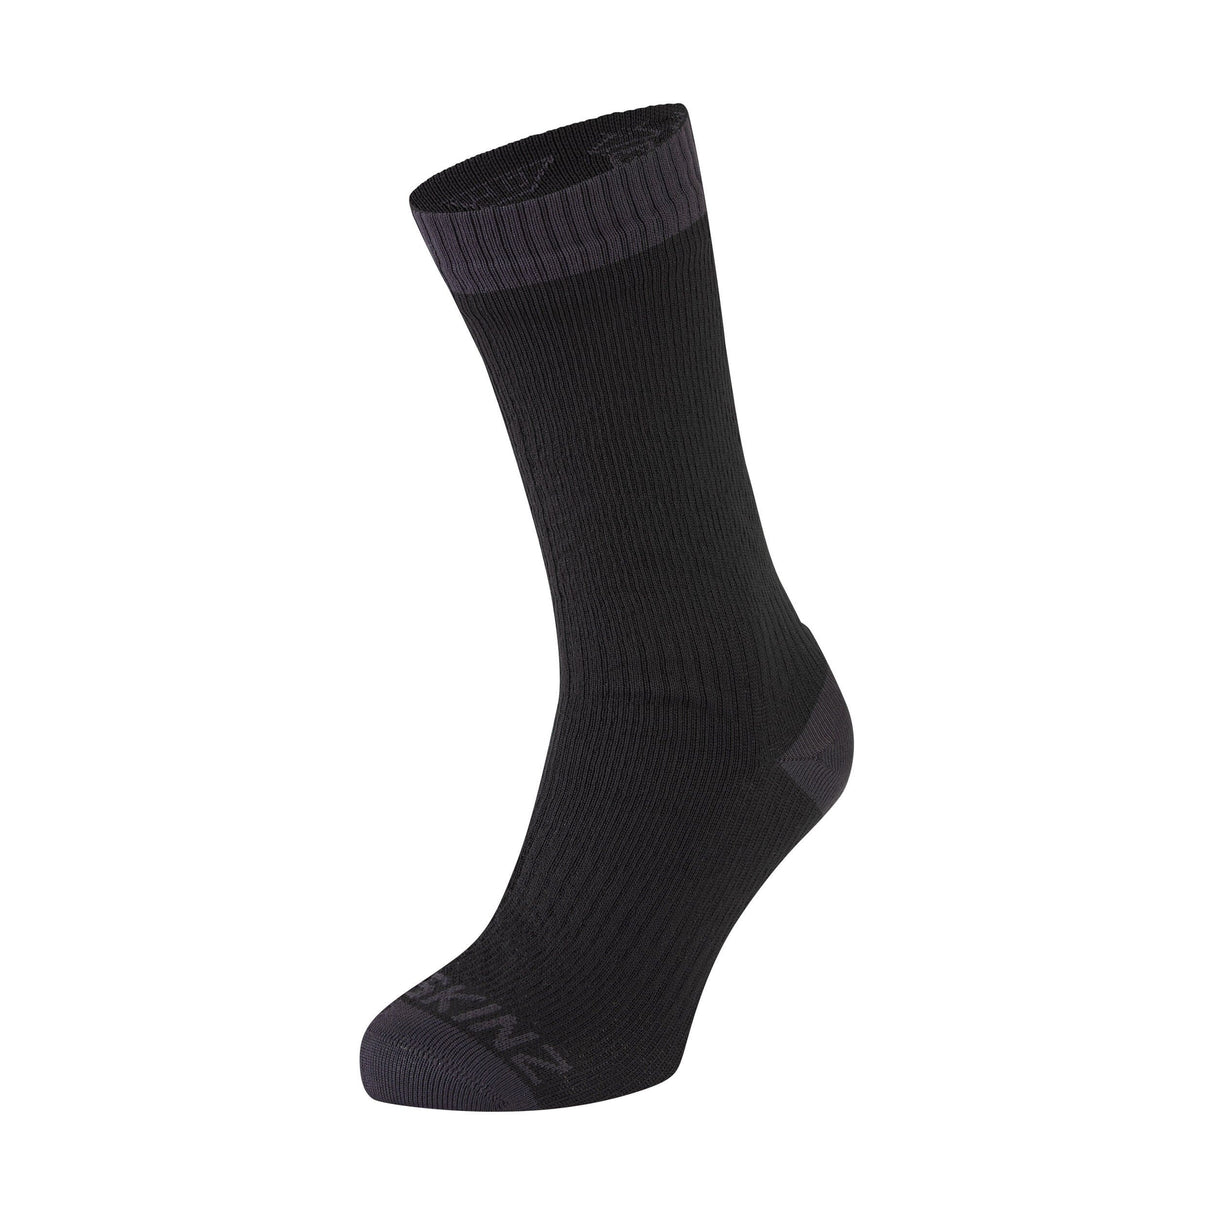 Sealskinz Wiveton Waterproof Warm Weather Mid Socks  -  Small / Black/Gray